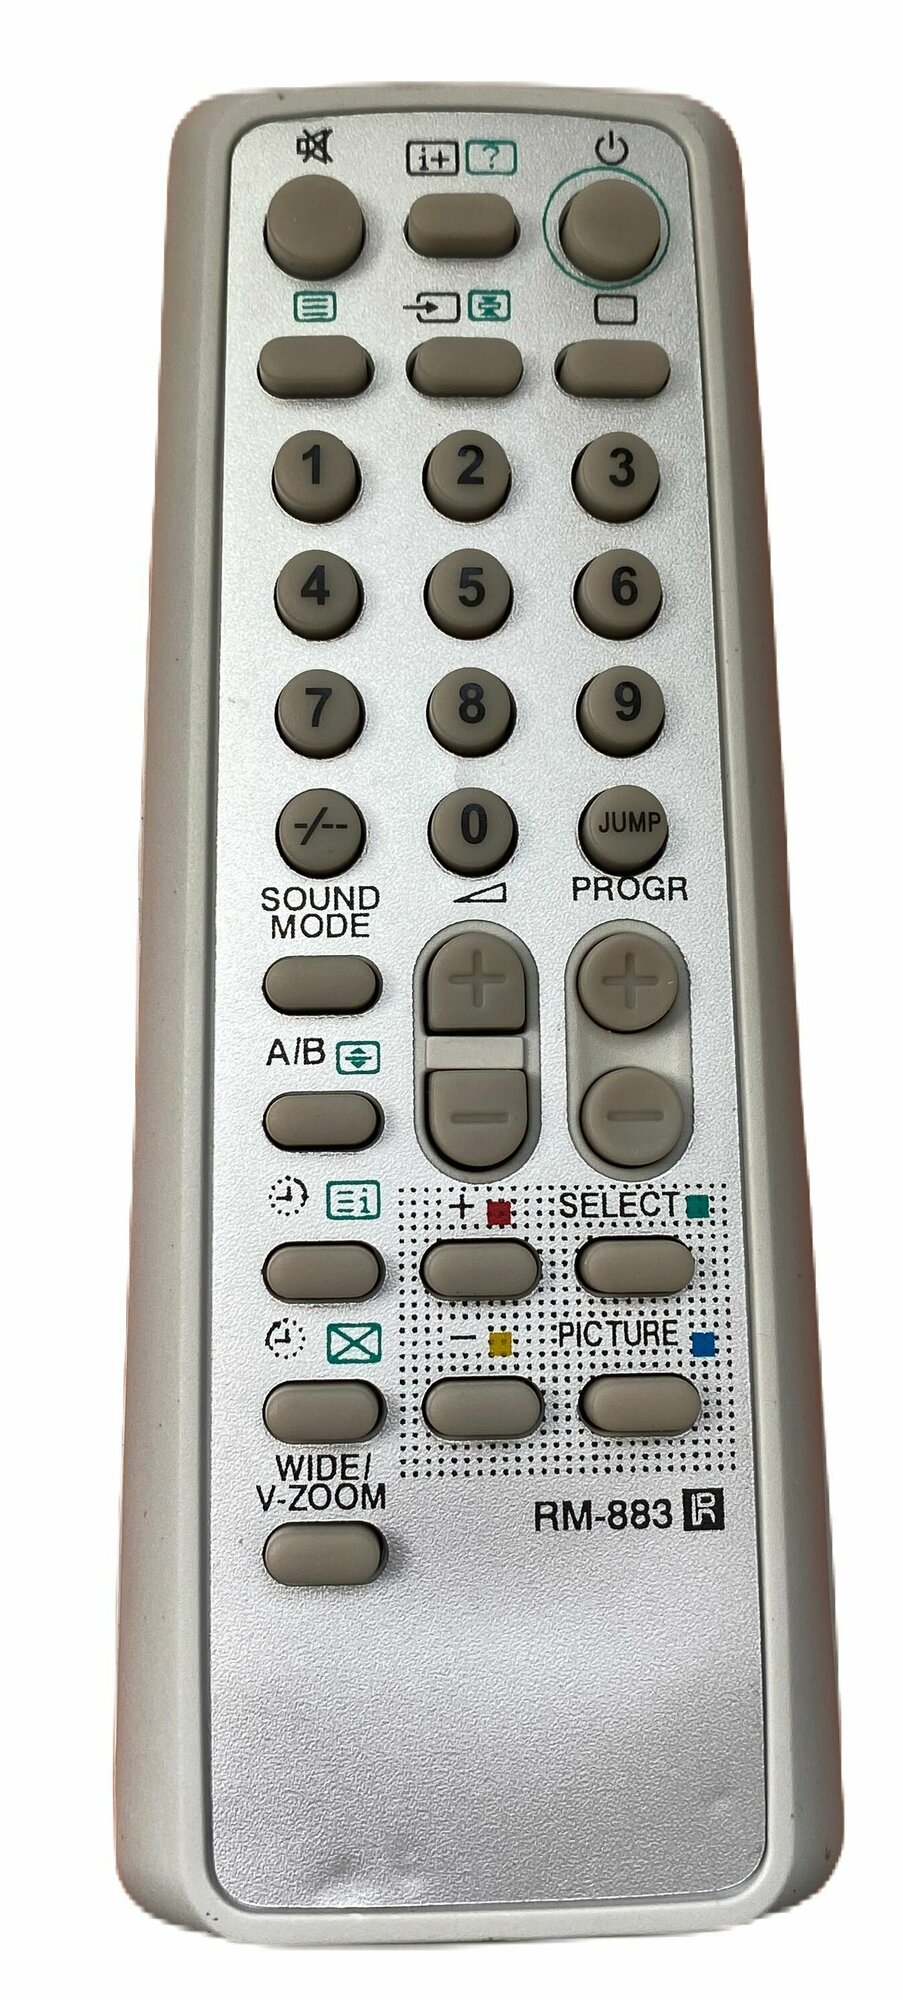 Пульт RM-883 для телевизора SONY